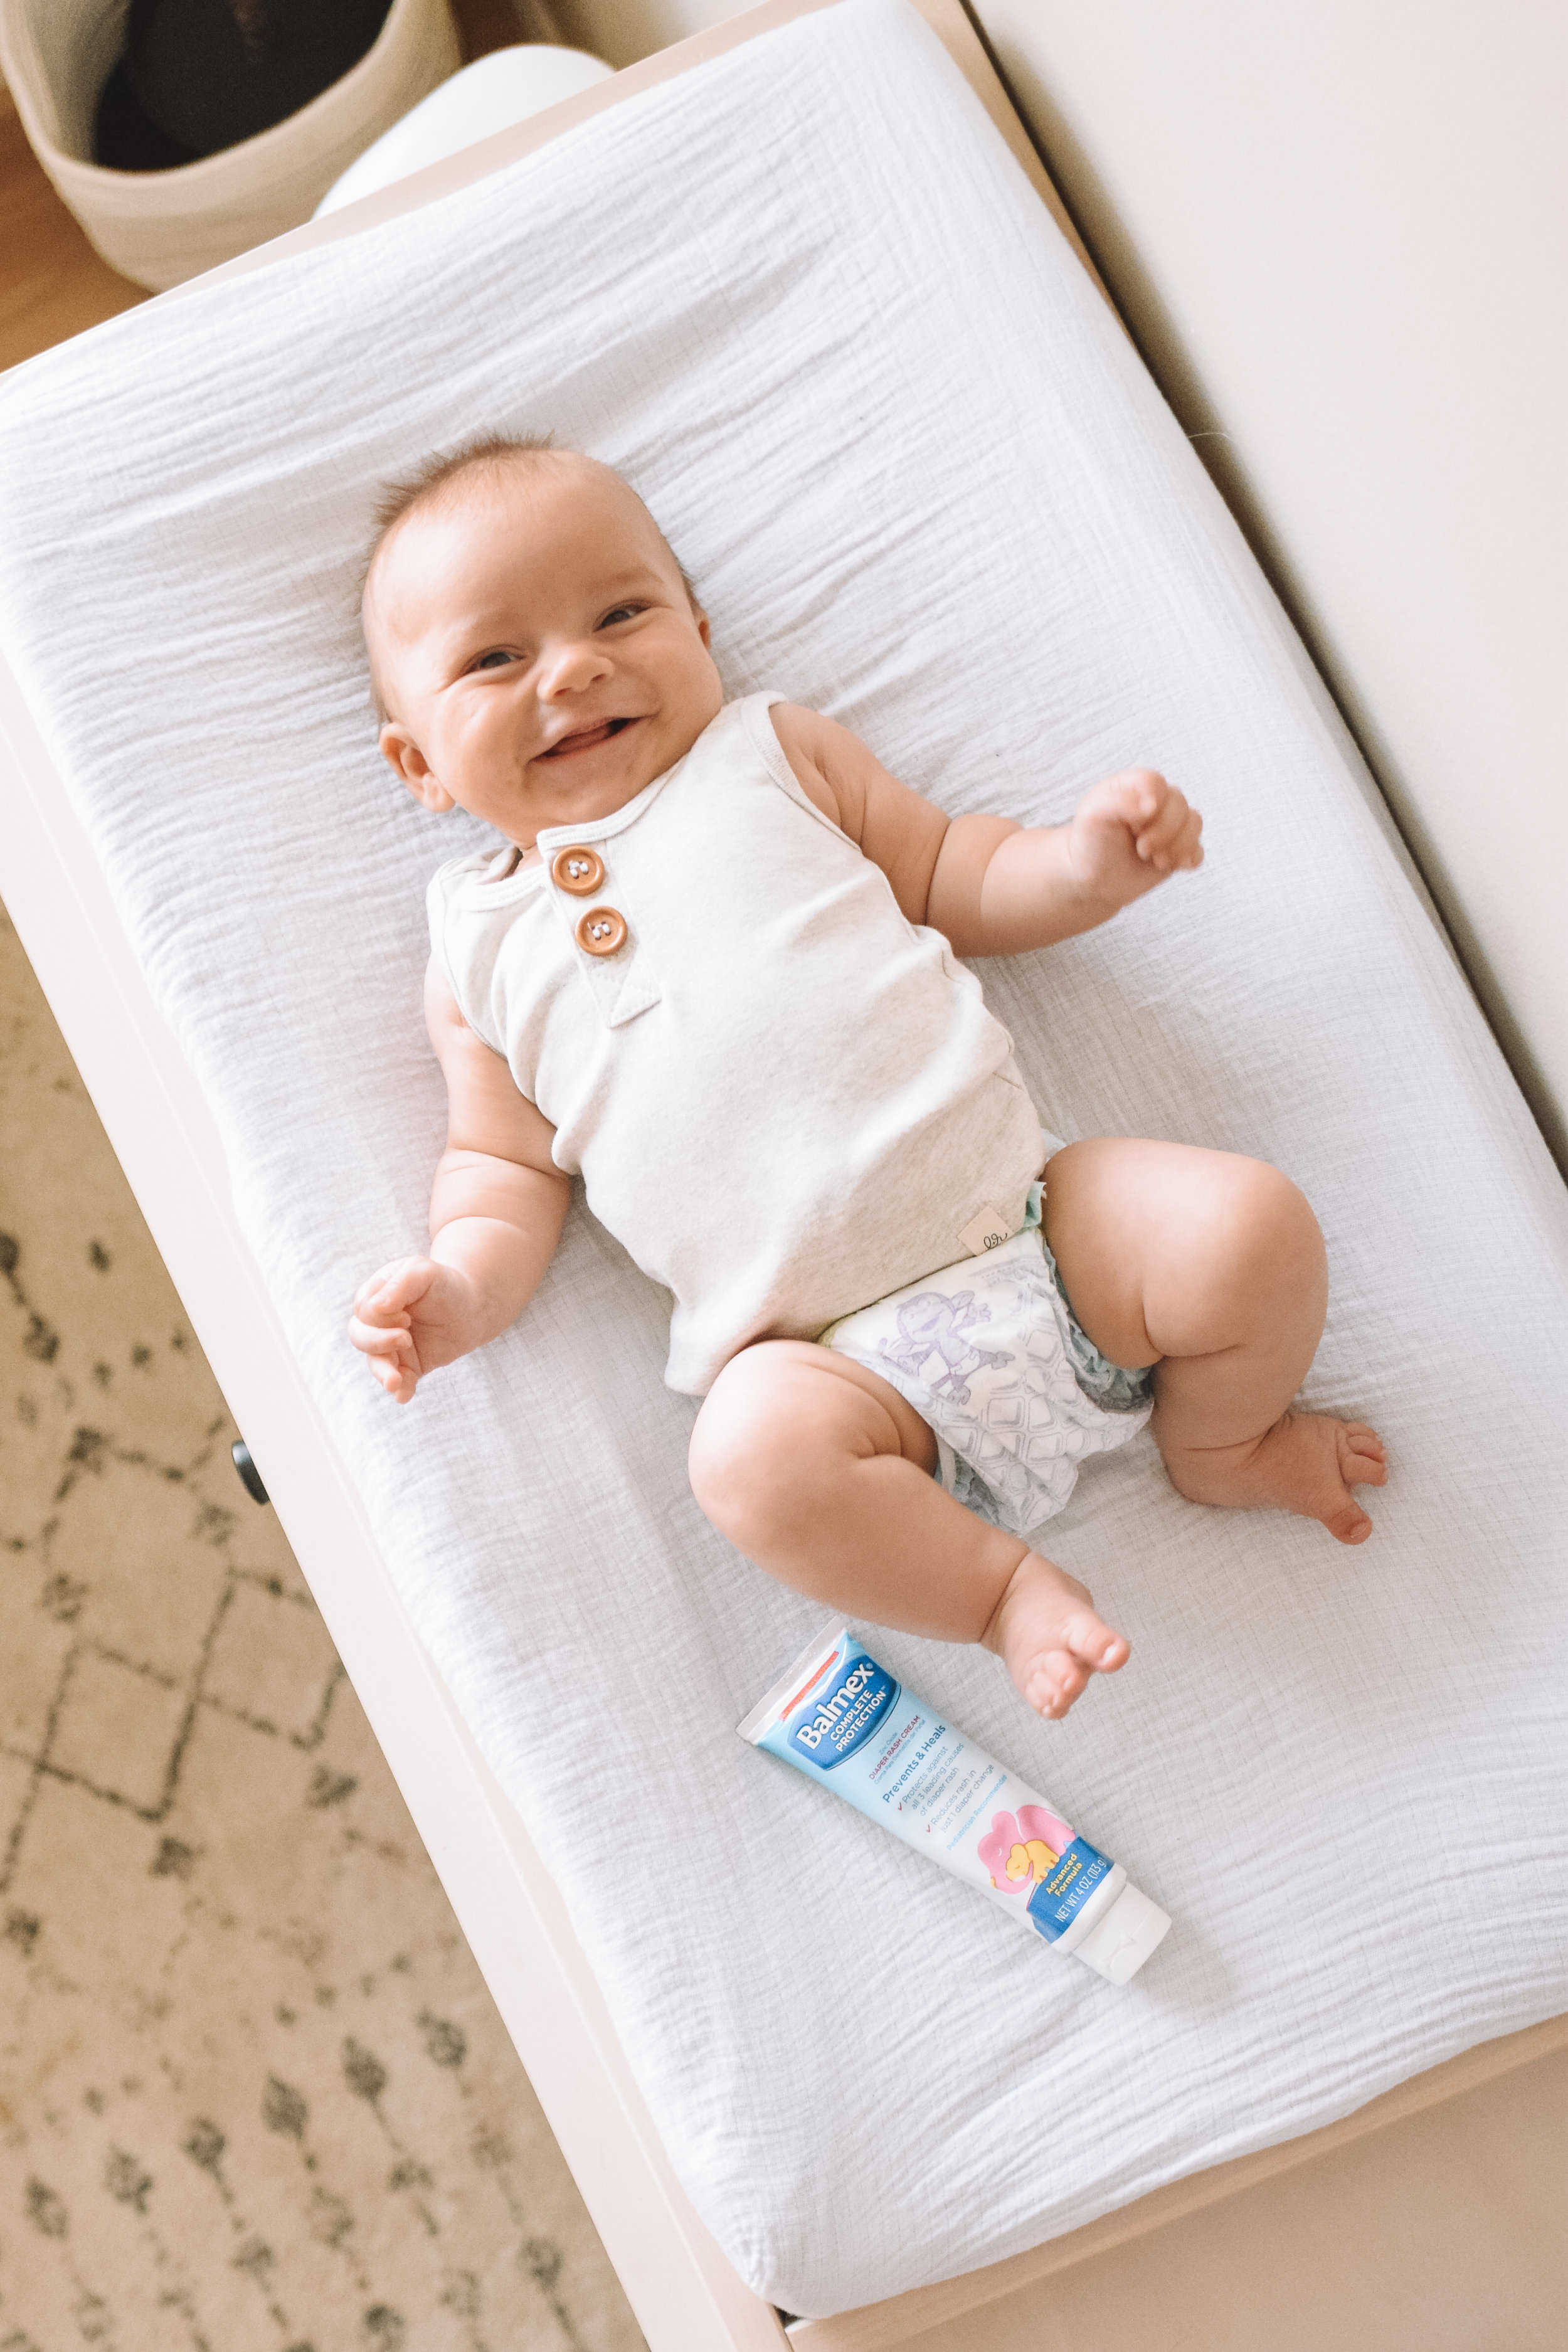 Do Cloth Diapers Help Prevent Diaper Rash